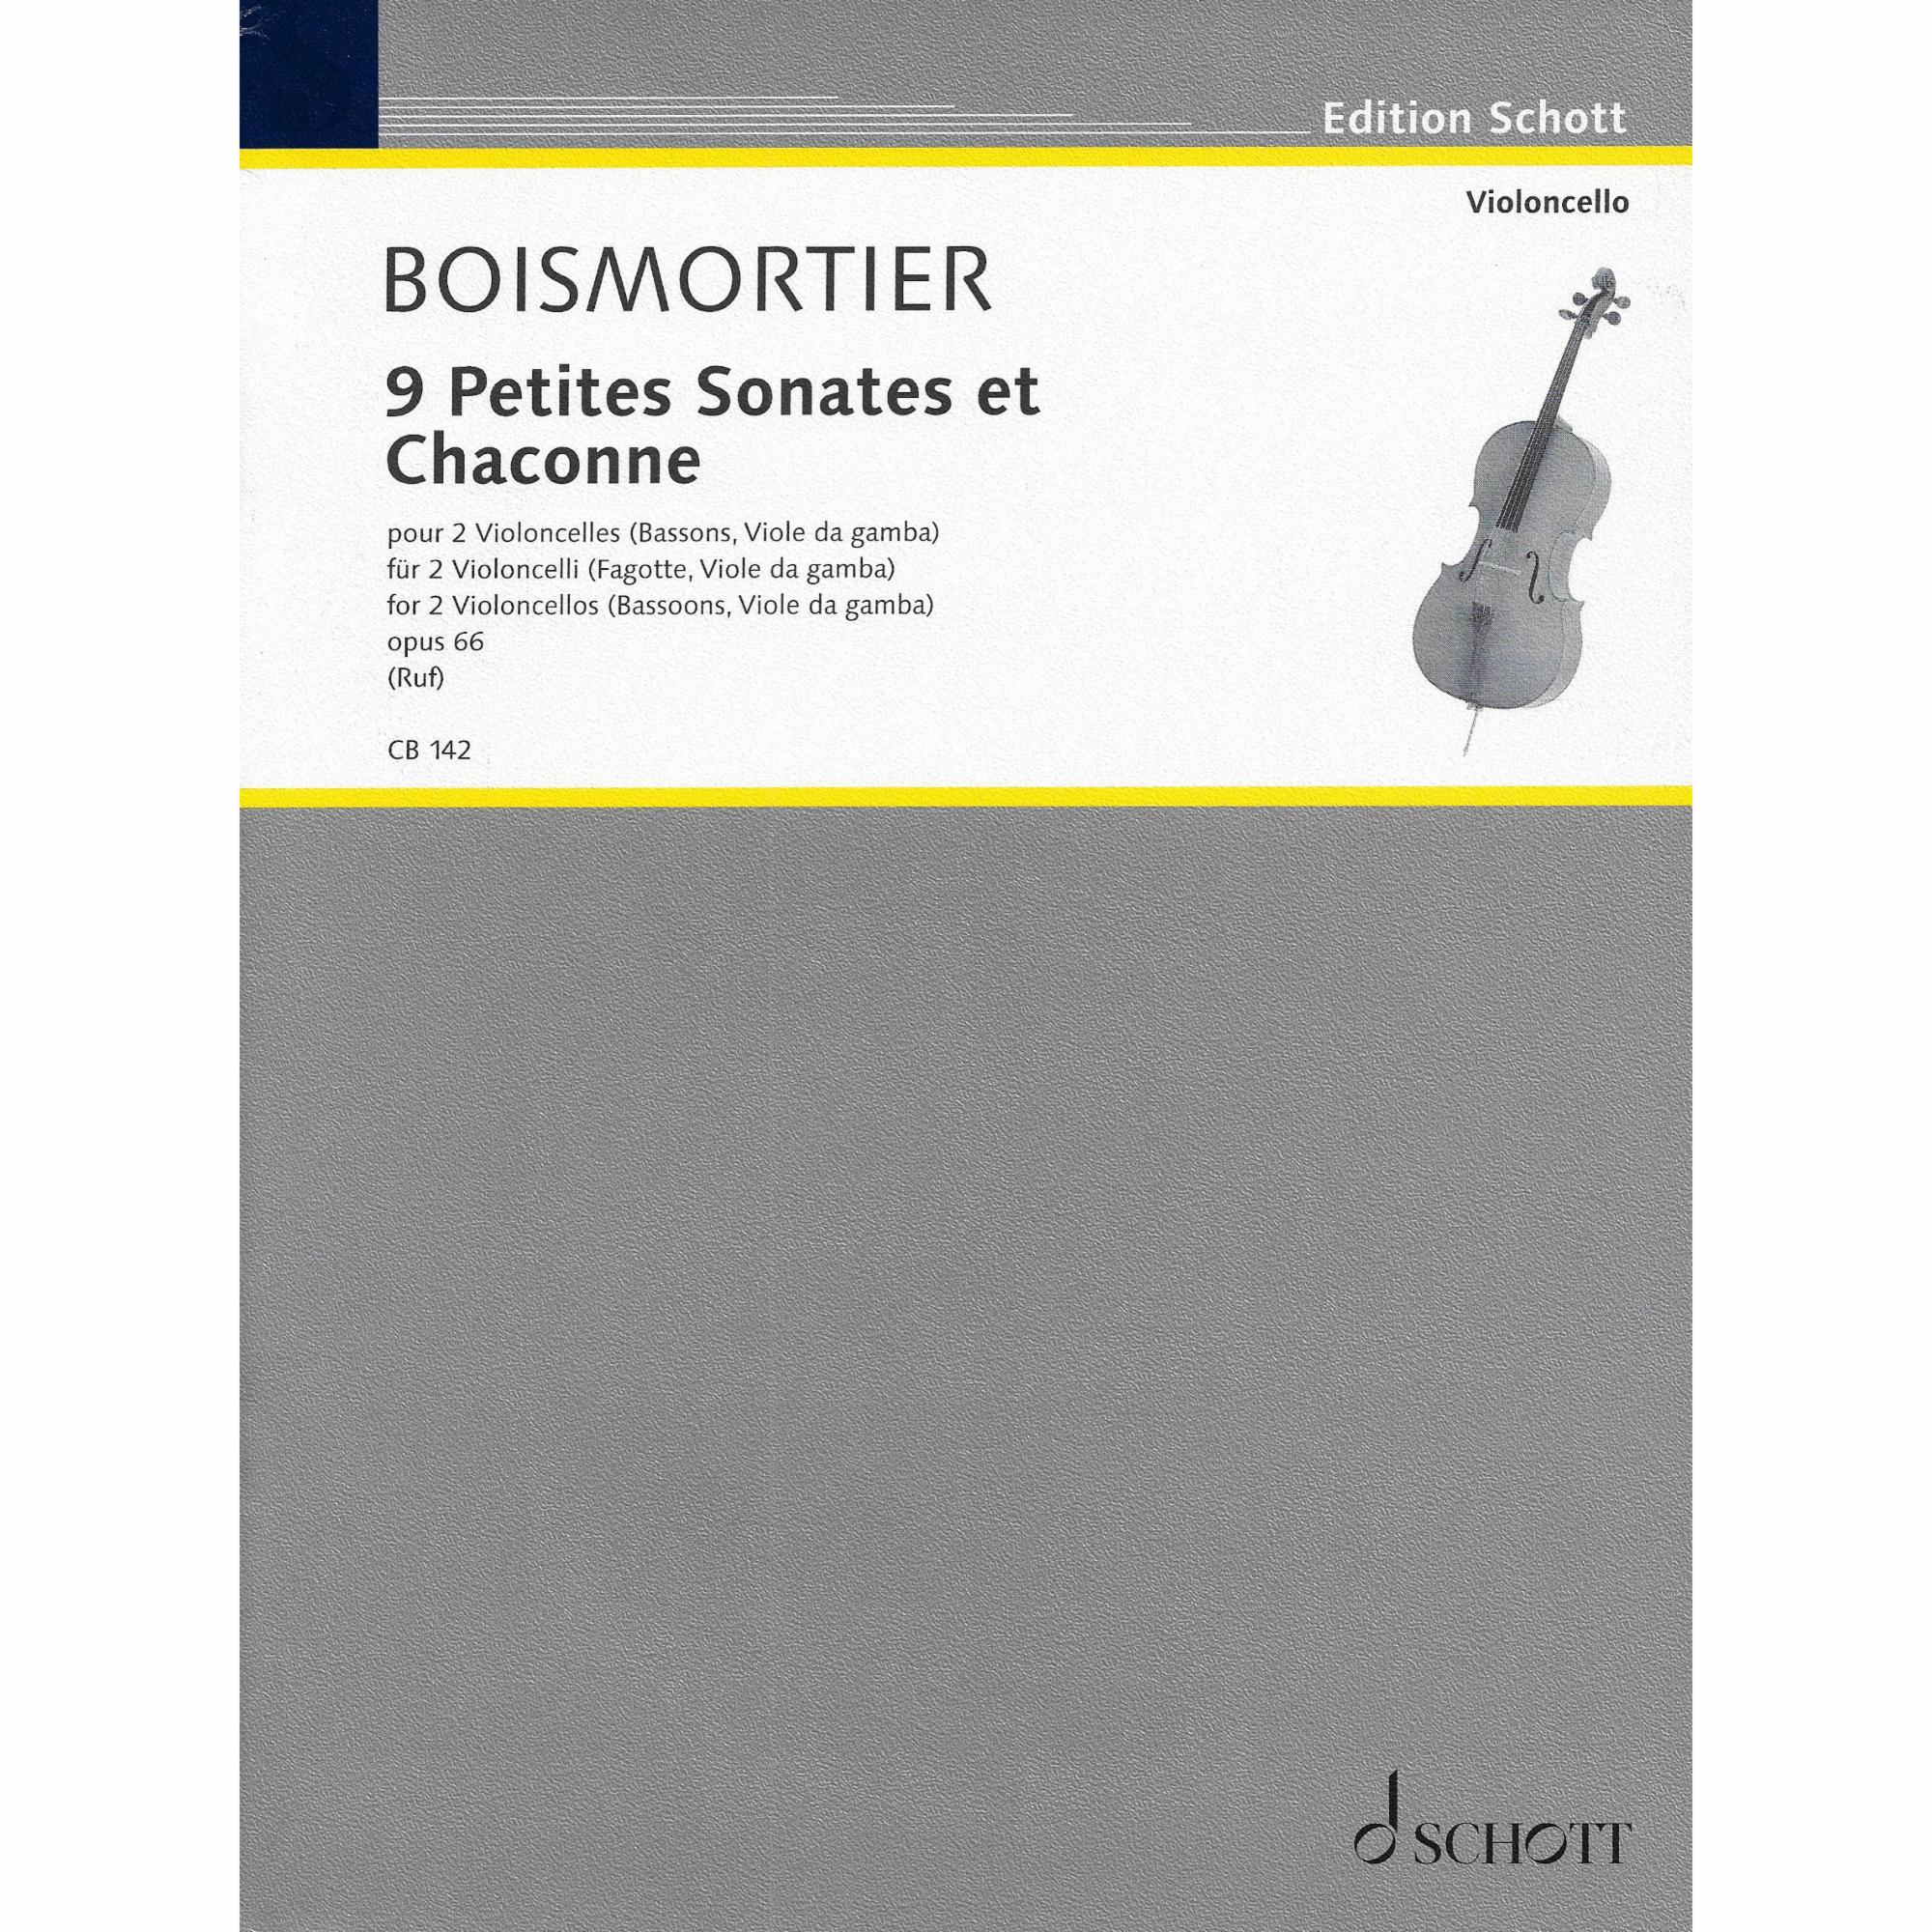 Boismortier -- 9 Petites Sonates et Chaconne, Op. 66 for Two Cellos